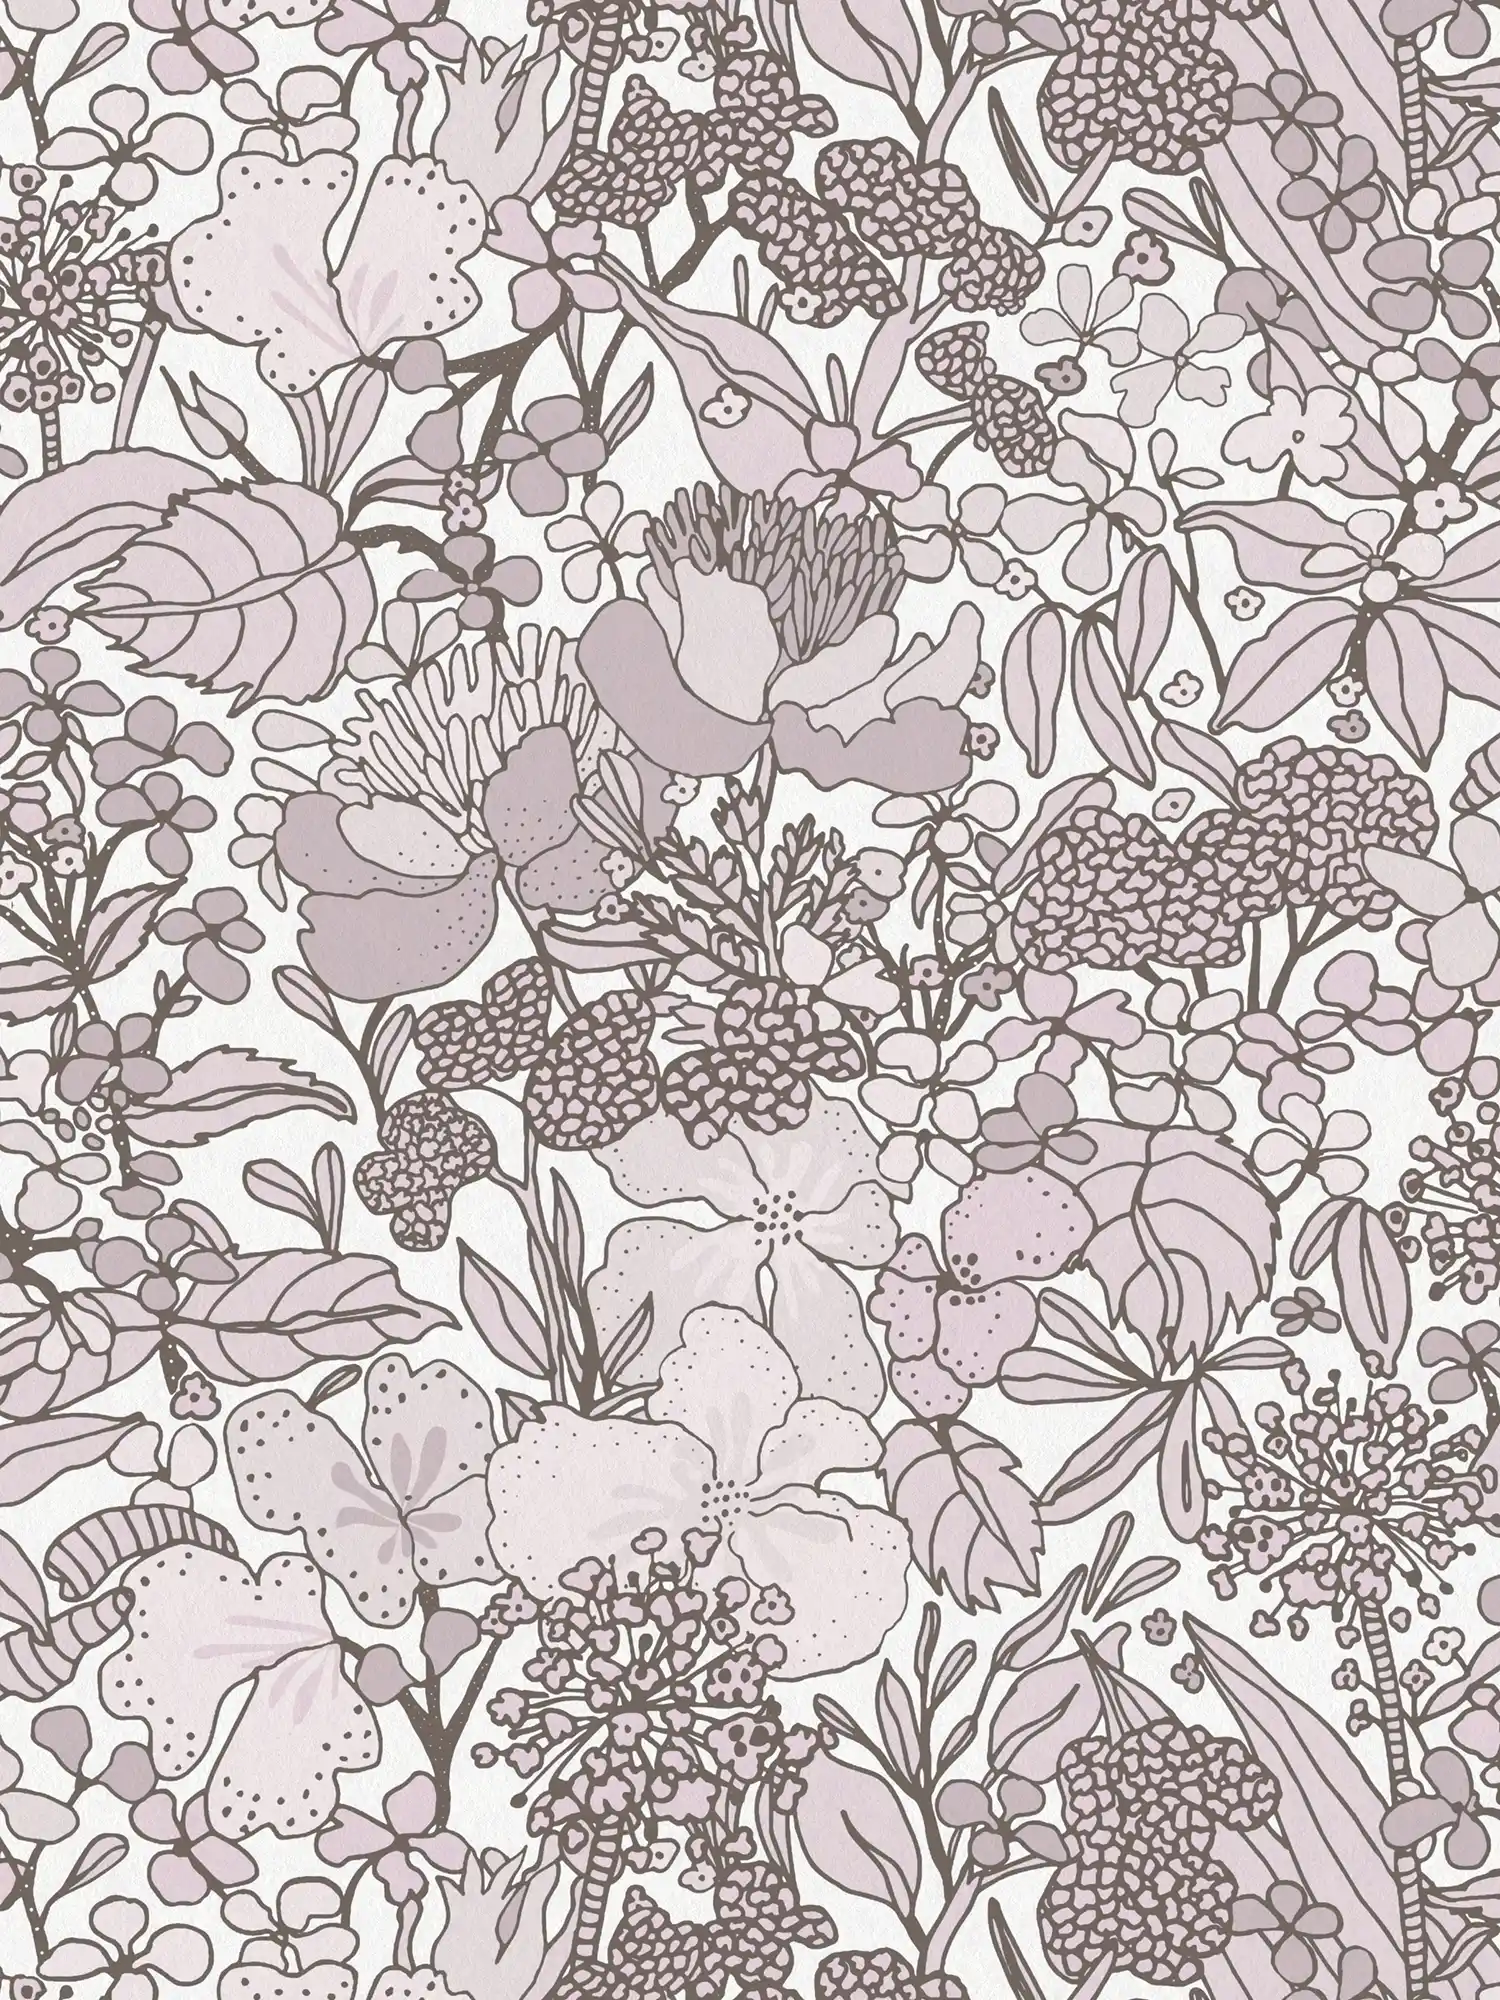 Tapete Grau Beige Blumenmuster im Zeichenstil – Creme, Braun, Weiß
